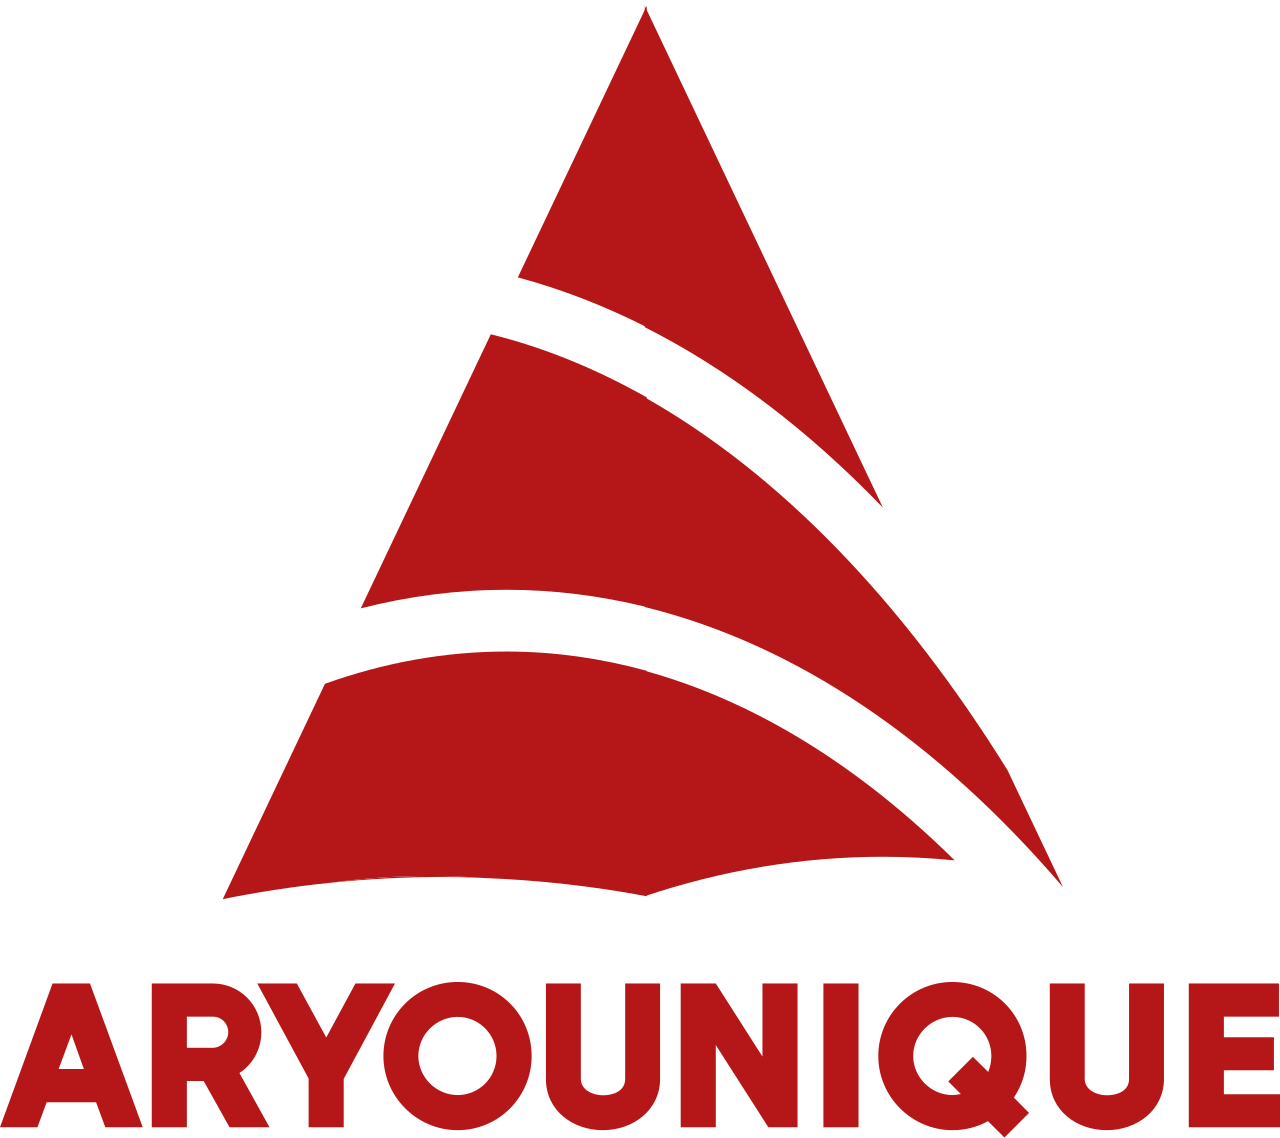 ARYOUNIQUE's logo